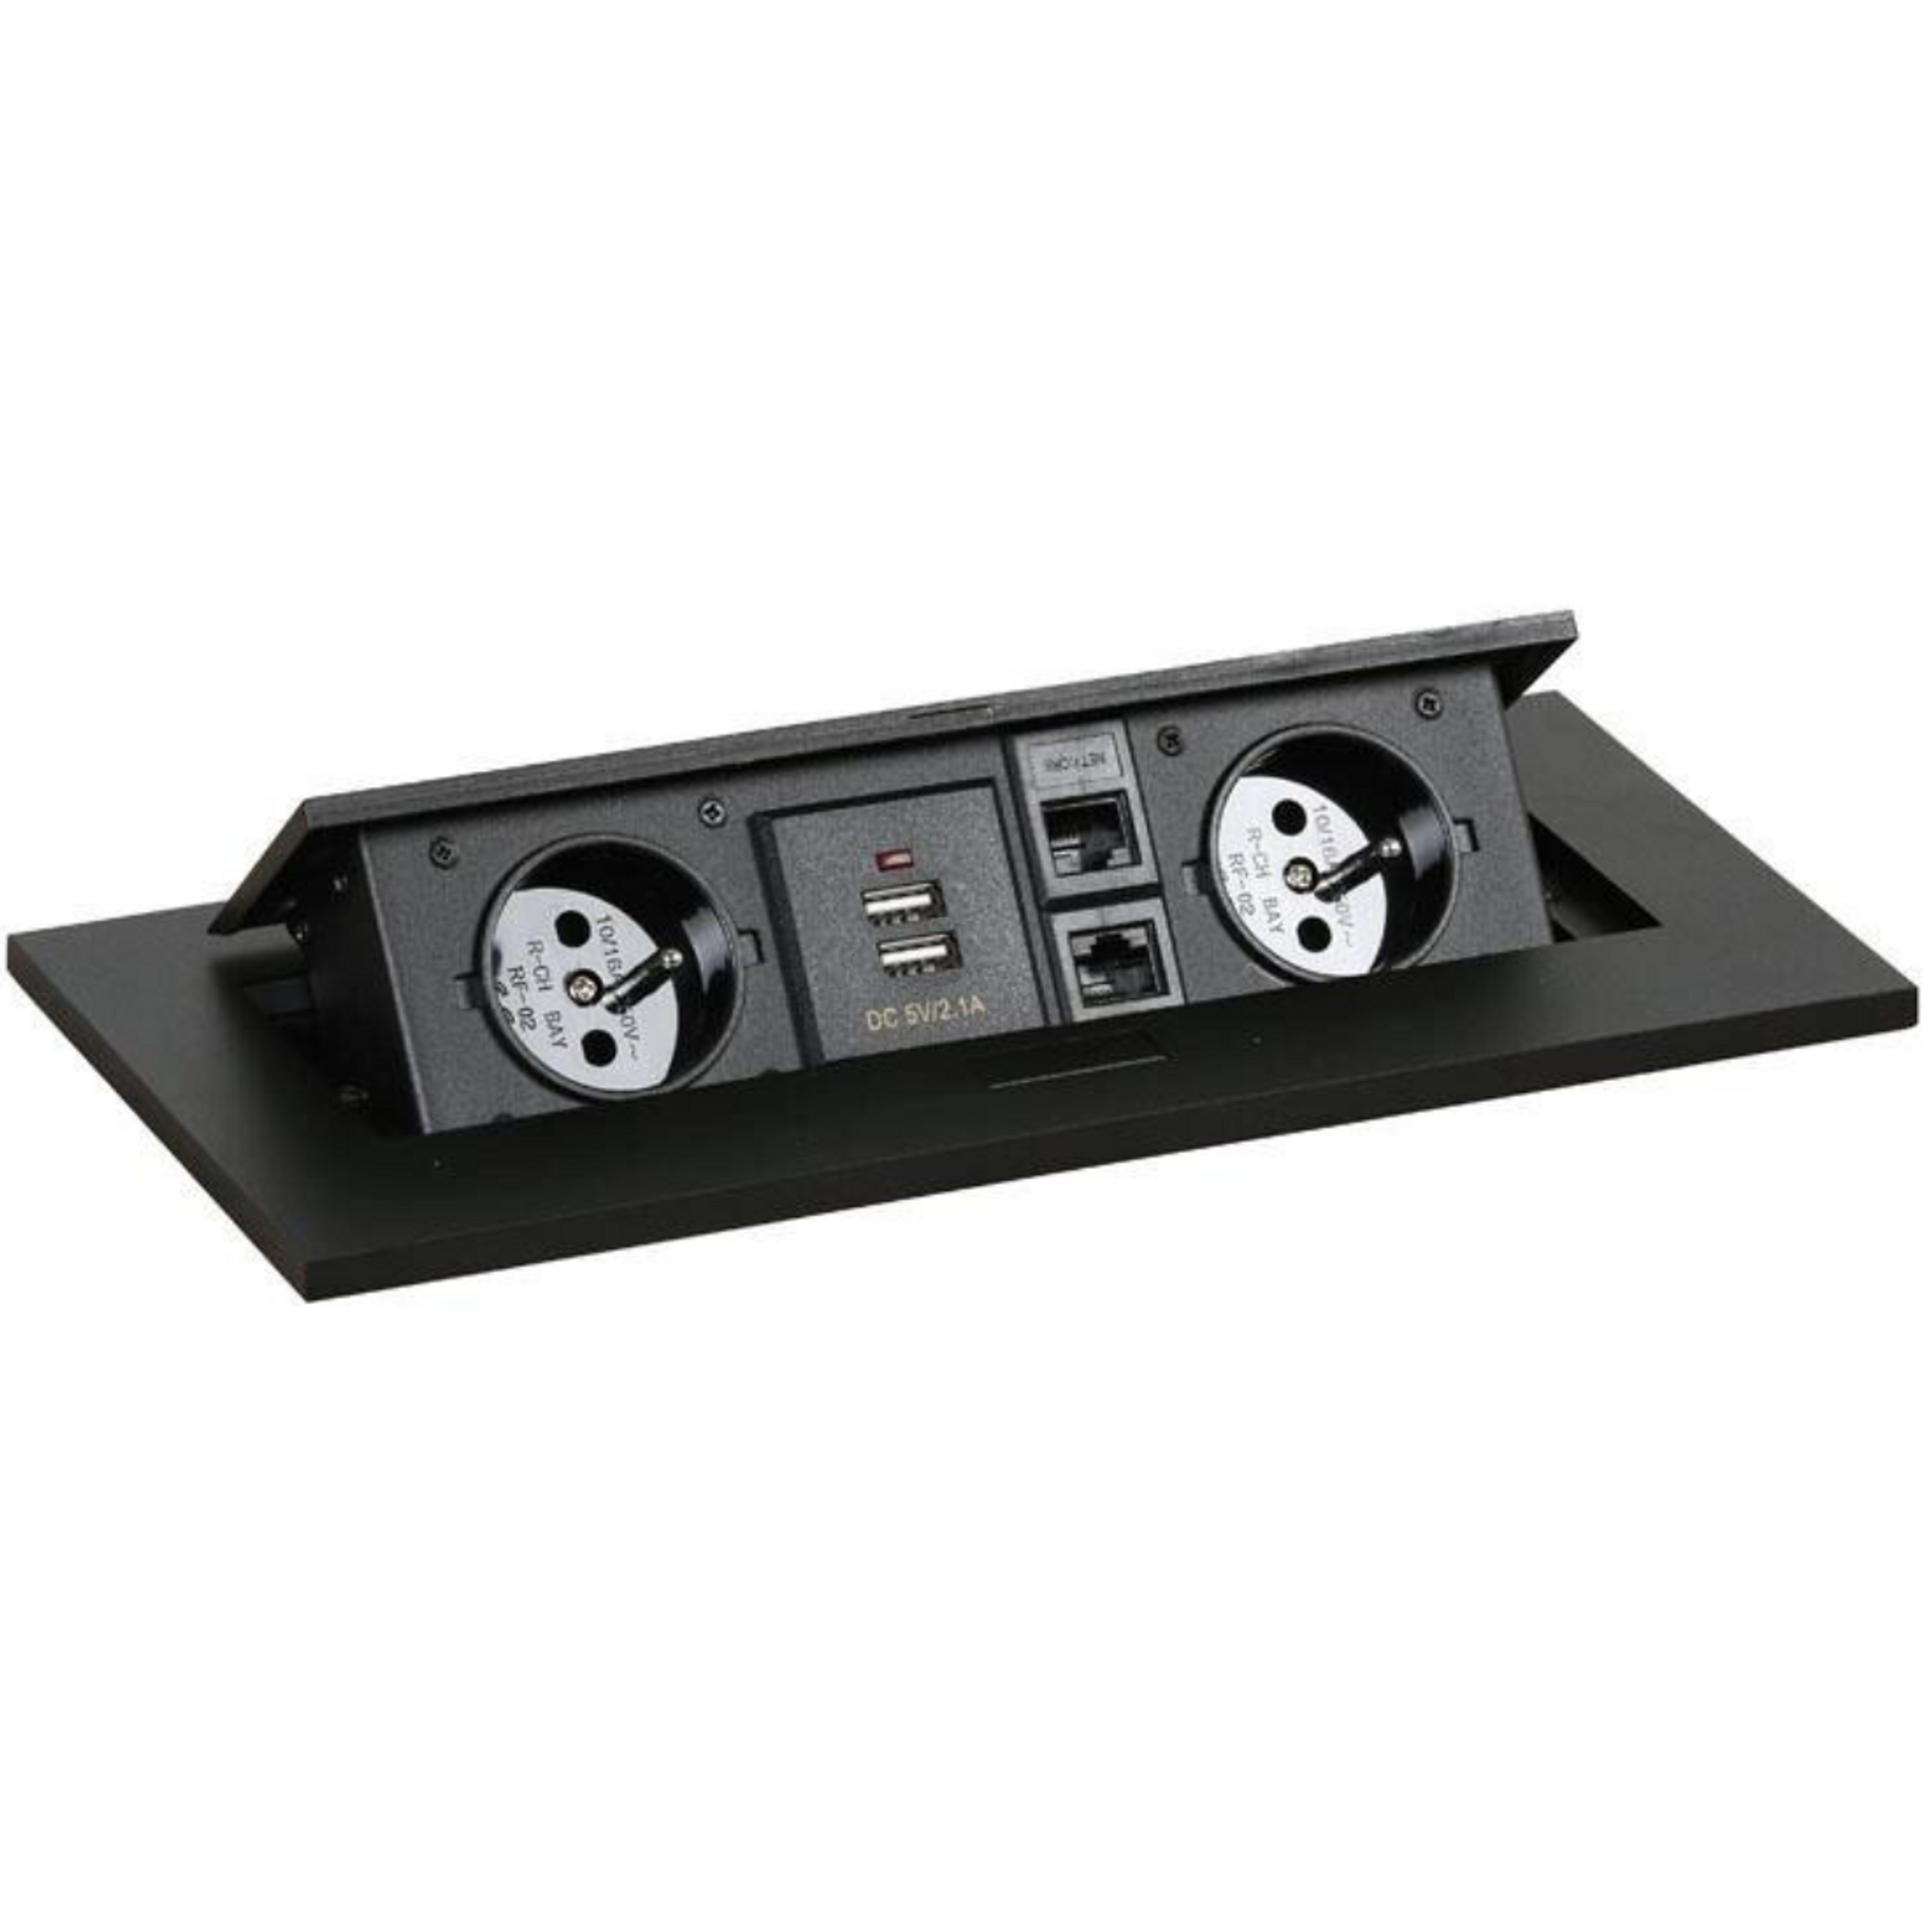 Zásuvkový box - výklopný, 2x zásuvka, 2x USB-A, 2x RJ45 port, čierna